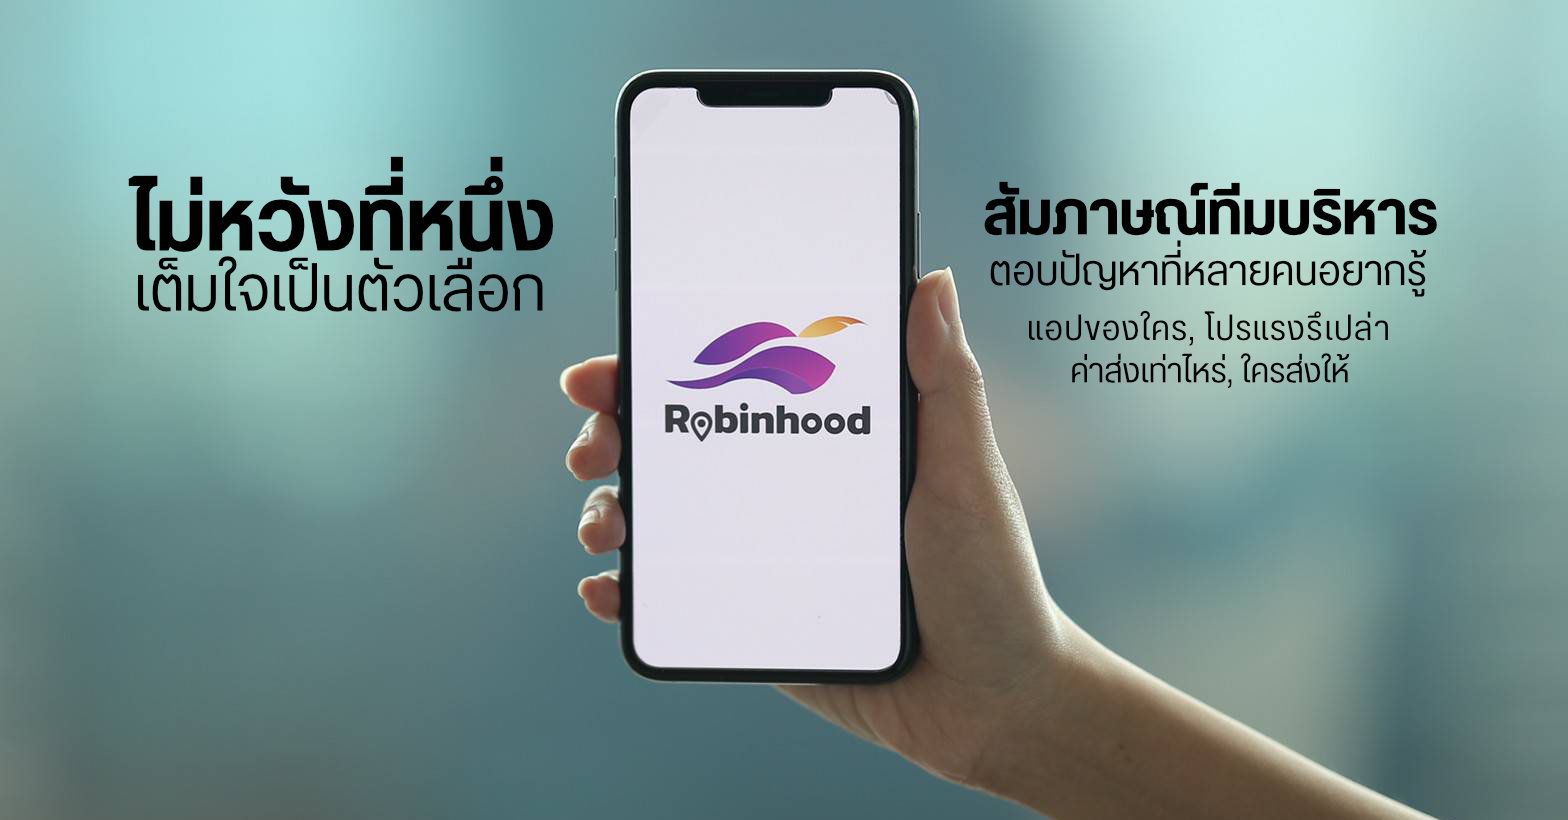 สัมภาษณ์ทีม Robinhood บริการส่งอาหารสุดฮอต ที่ไม่หวังเป็นอันดับหนึ่ง แต่ขอเป็นทางเลือกสำหรับคนไทย